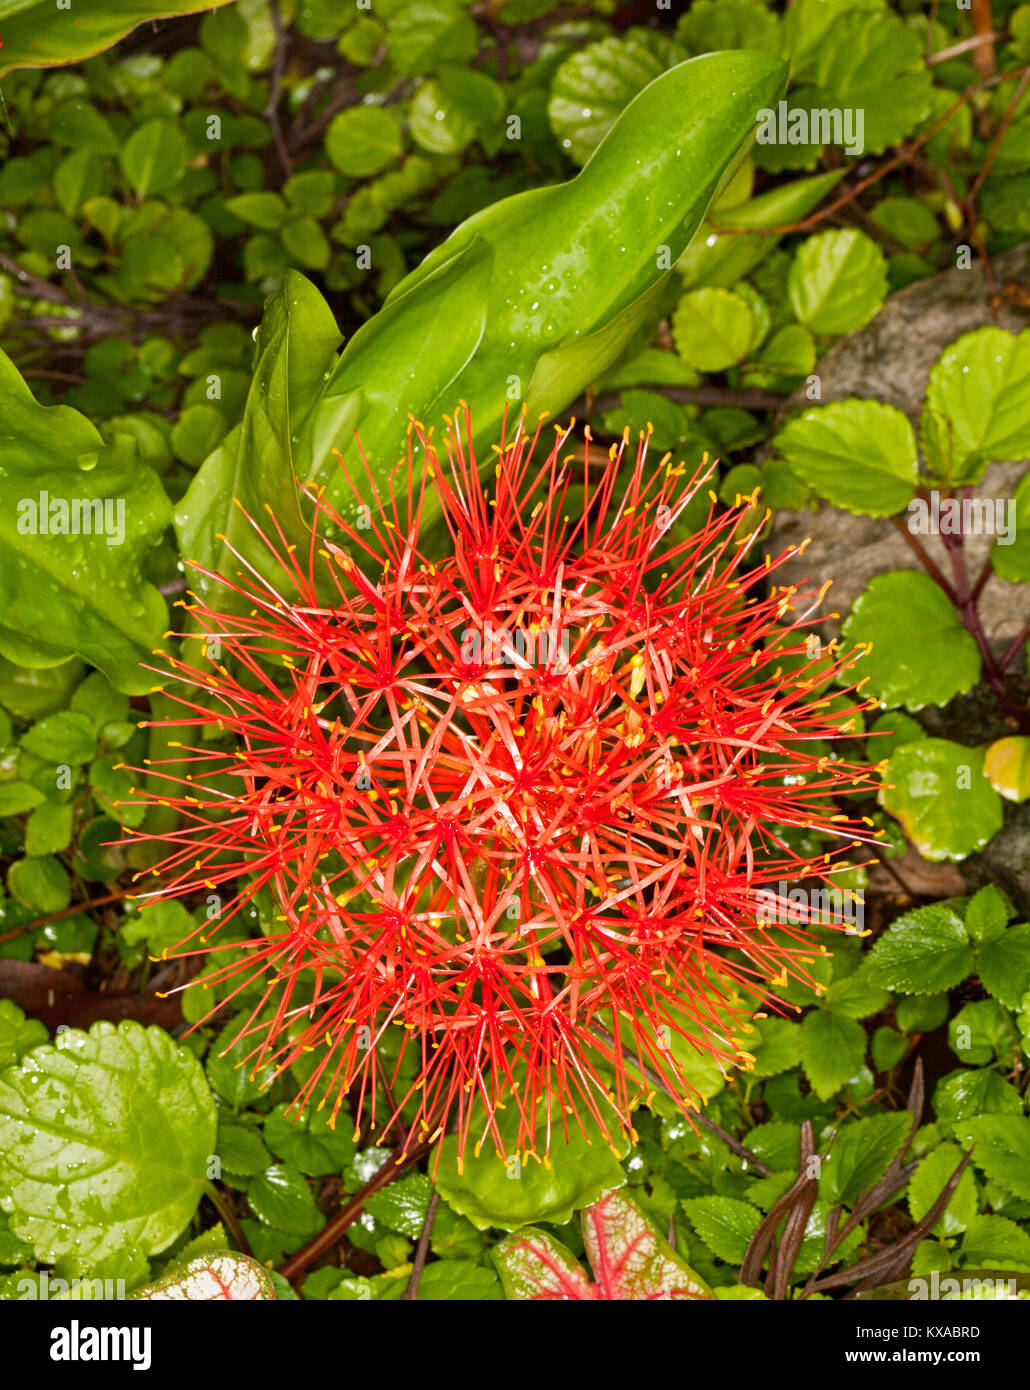 Fleur rouge inhabituelle de l'ampoule de floraison printemps Scadoxus multiflorus syn. Haemanthus, lily de sang africain sur le feuillage vert en arrière-plan Banque D'Images